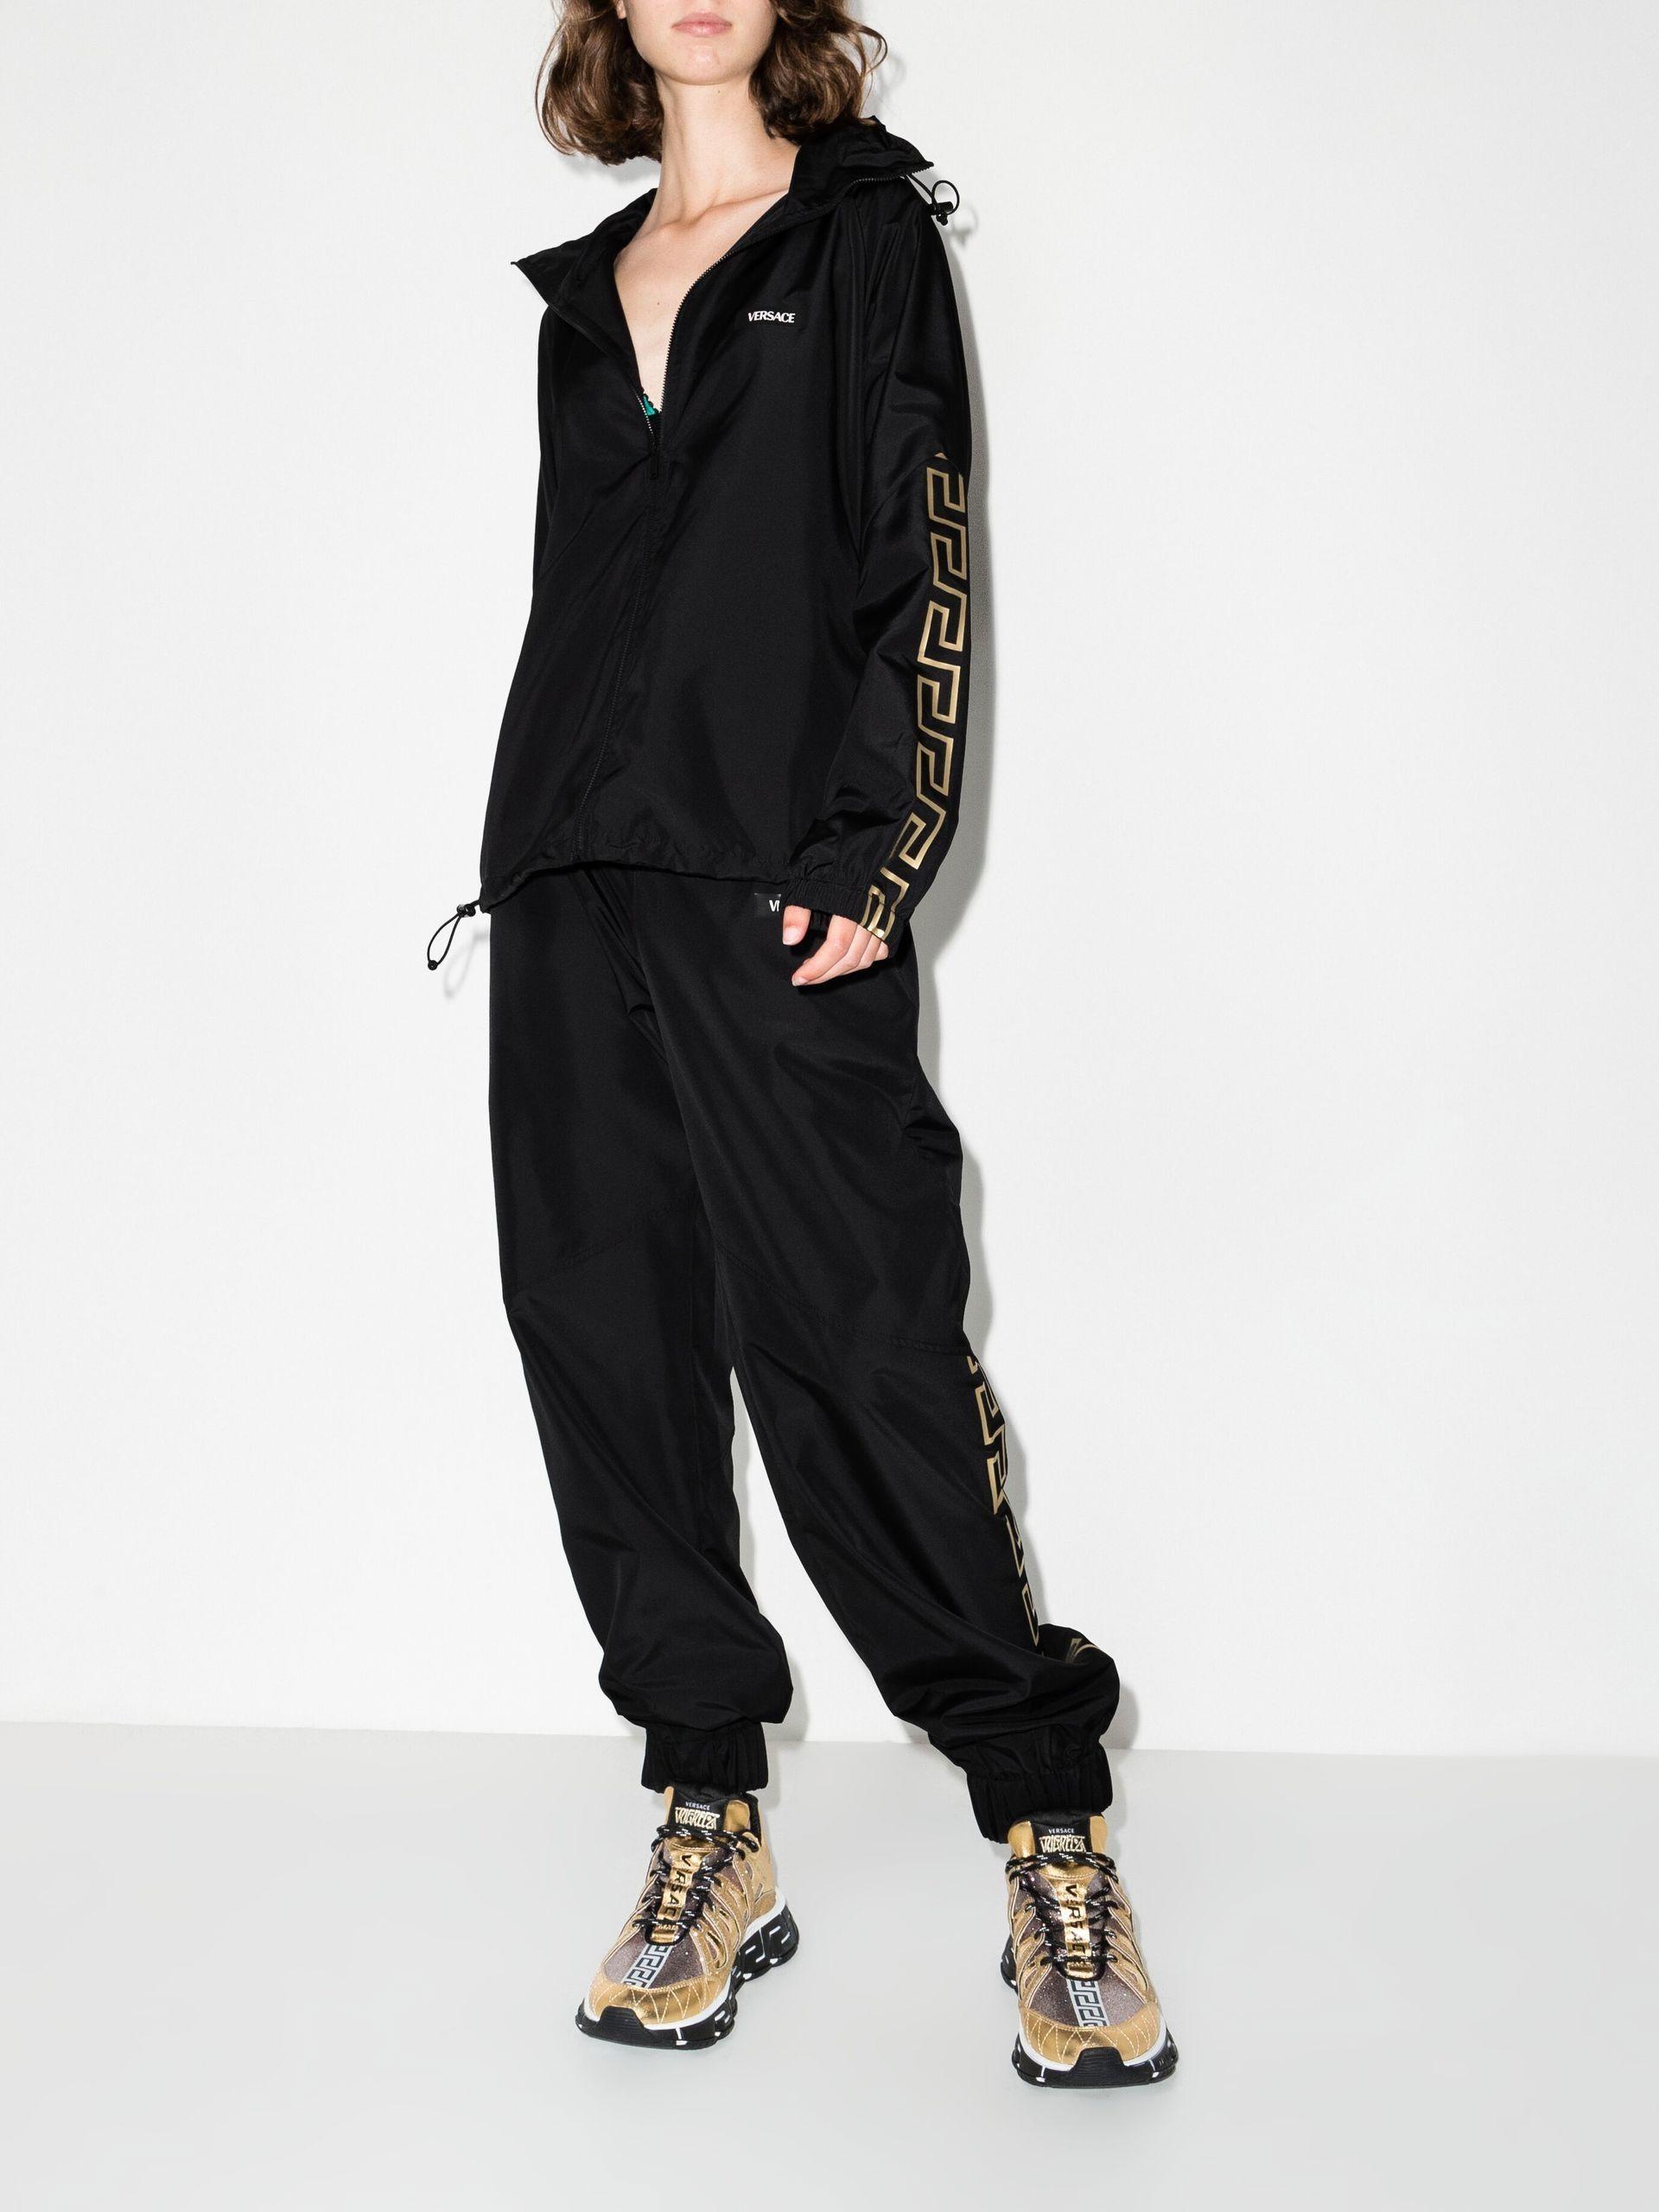 Versace Greca Border Zip-up Track Jacket - Women's - Polyester